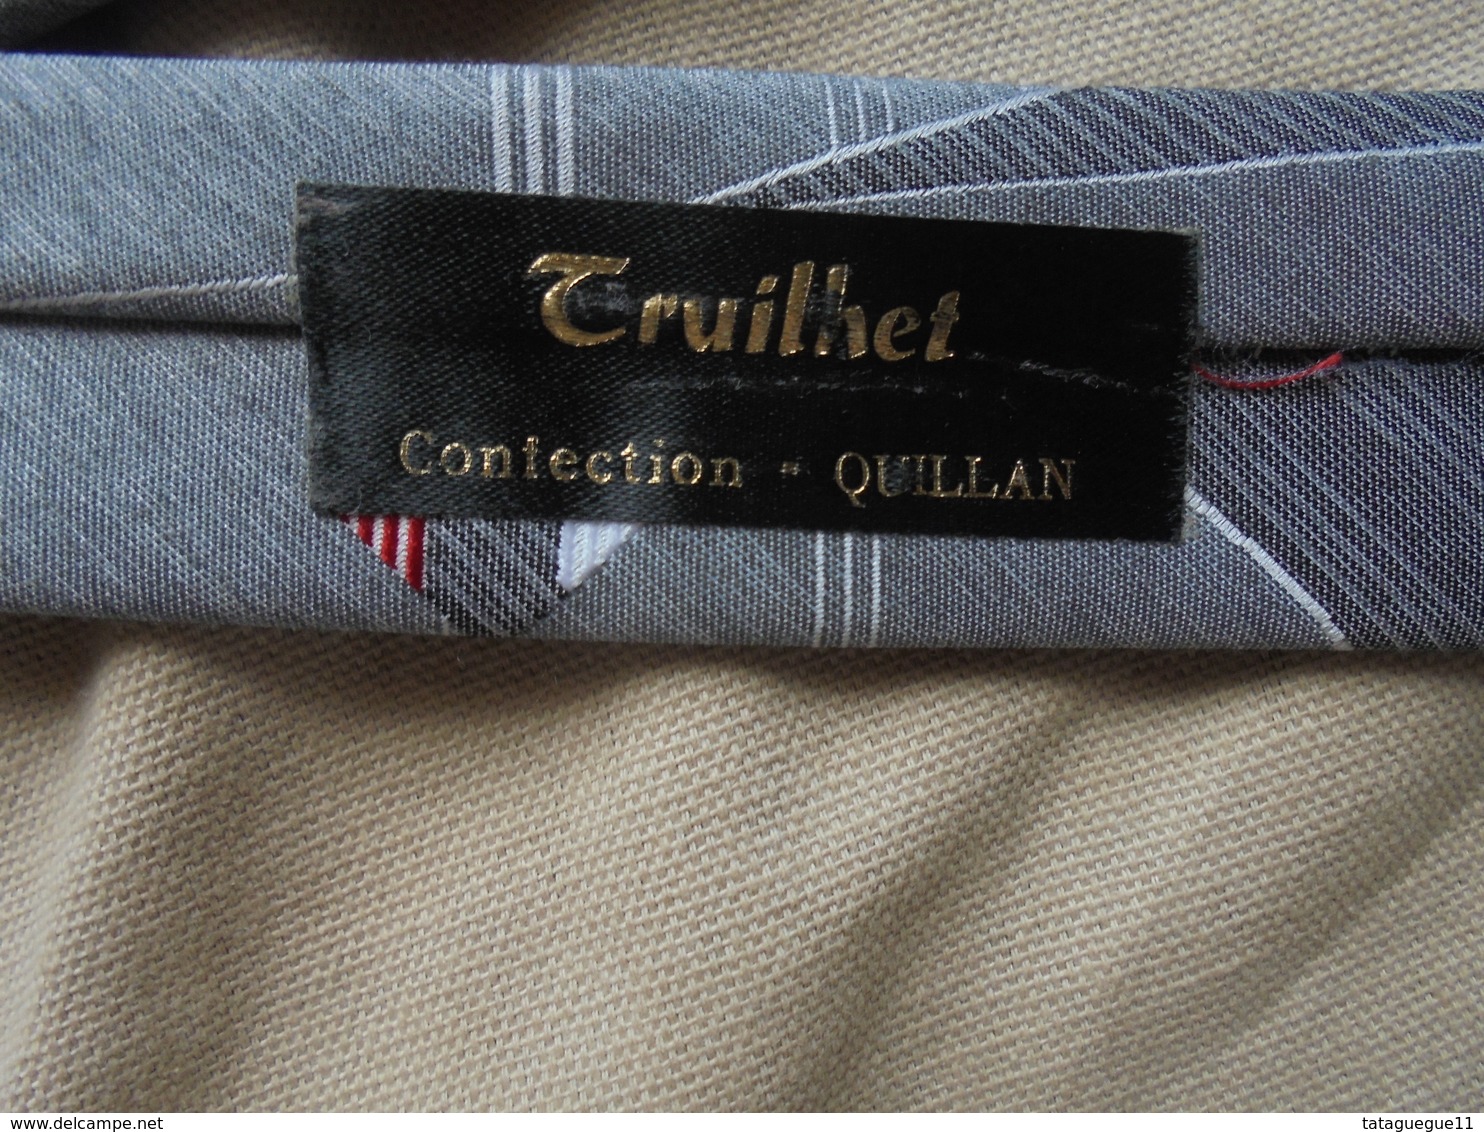 Vintage - Cravate grise Truilhet Confection Quillan